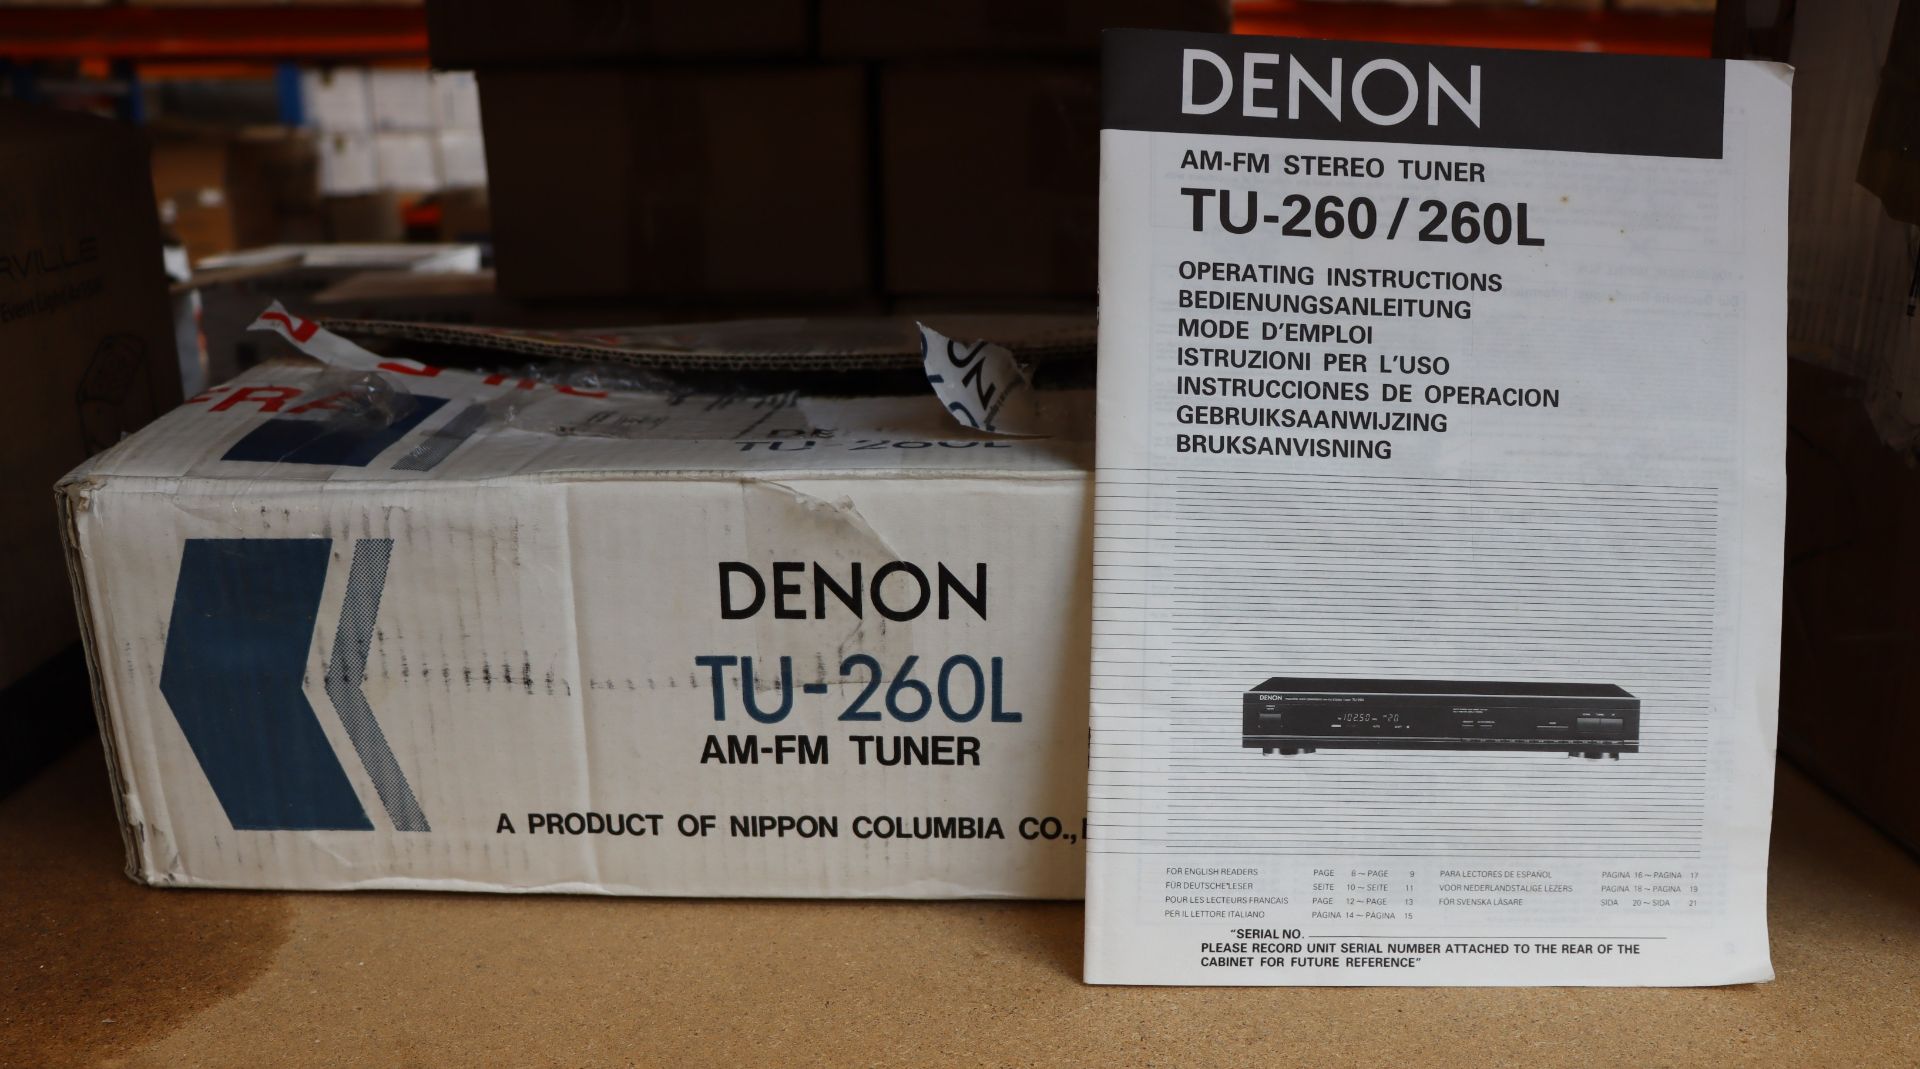 One boxed Denon TU-260L AM-FM Stereo Tuner.